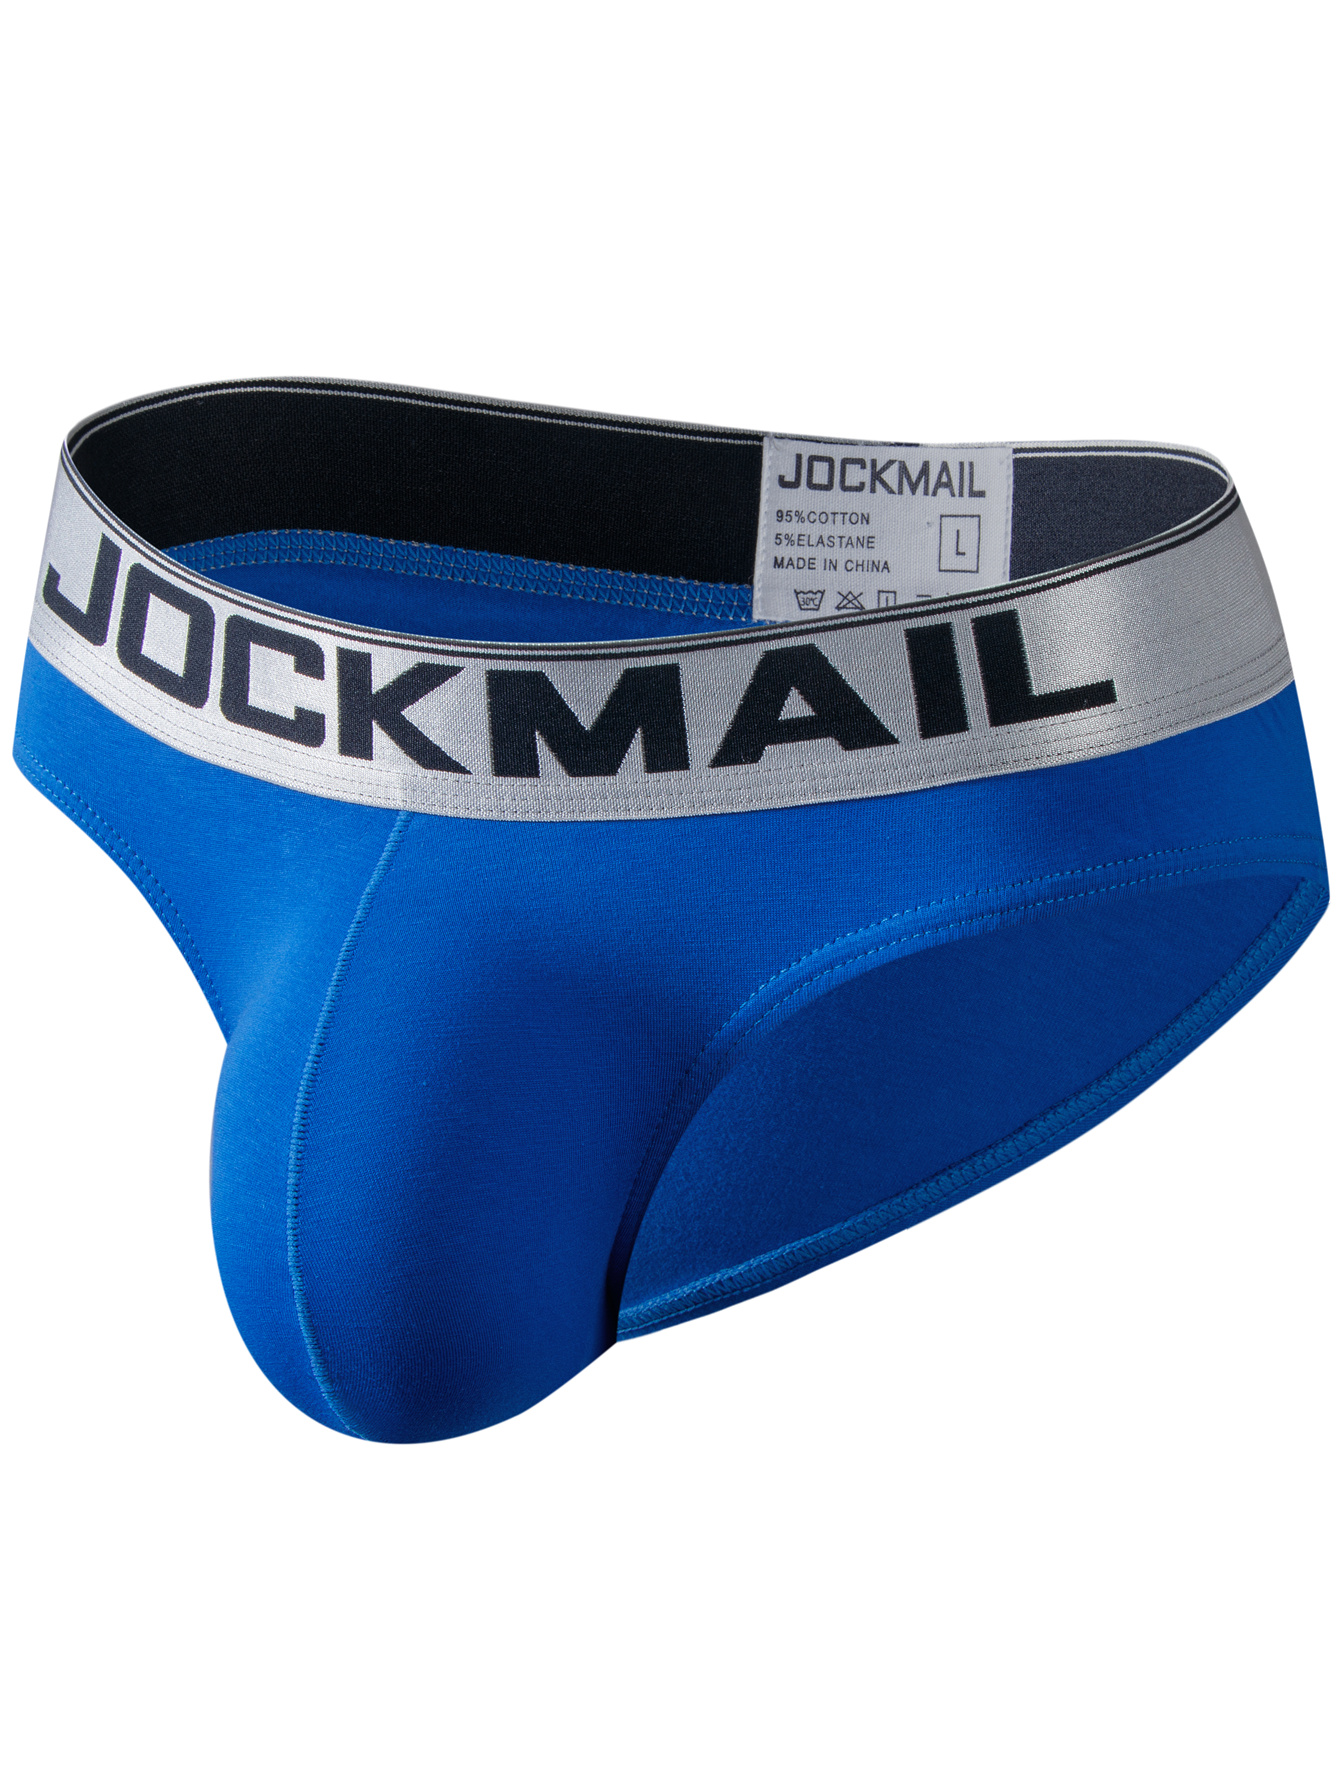 JOCKMAIL Cotton Briefs Sexy men underwear U convex Pouch